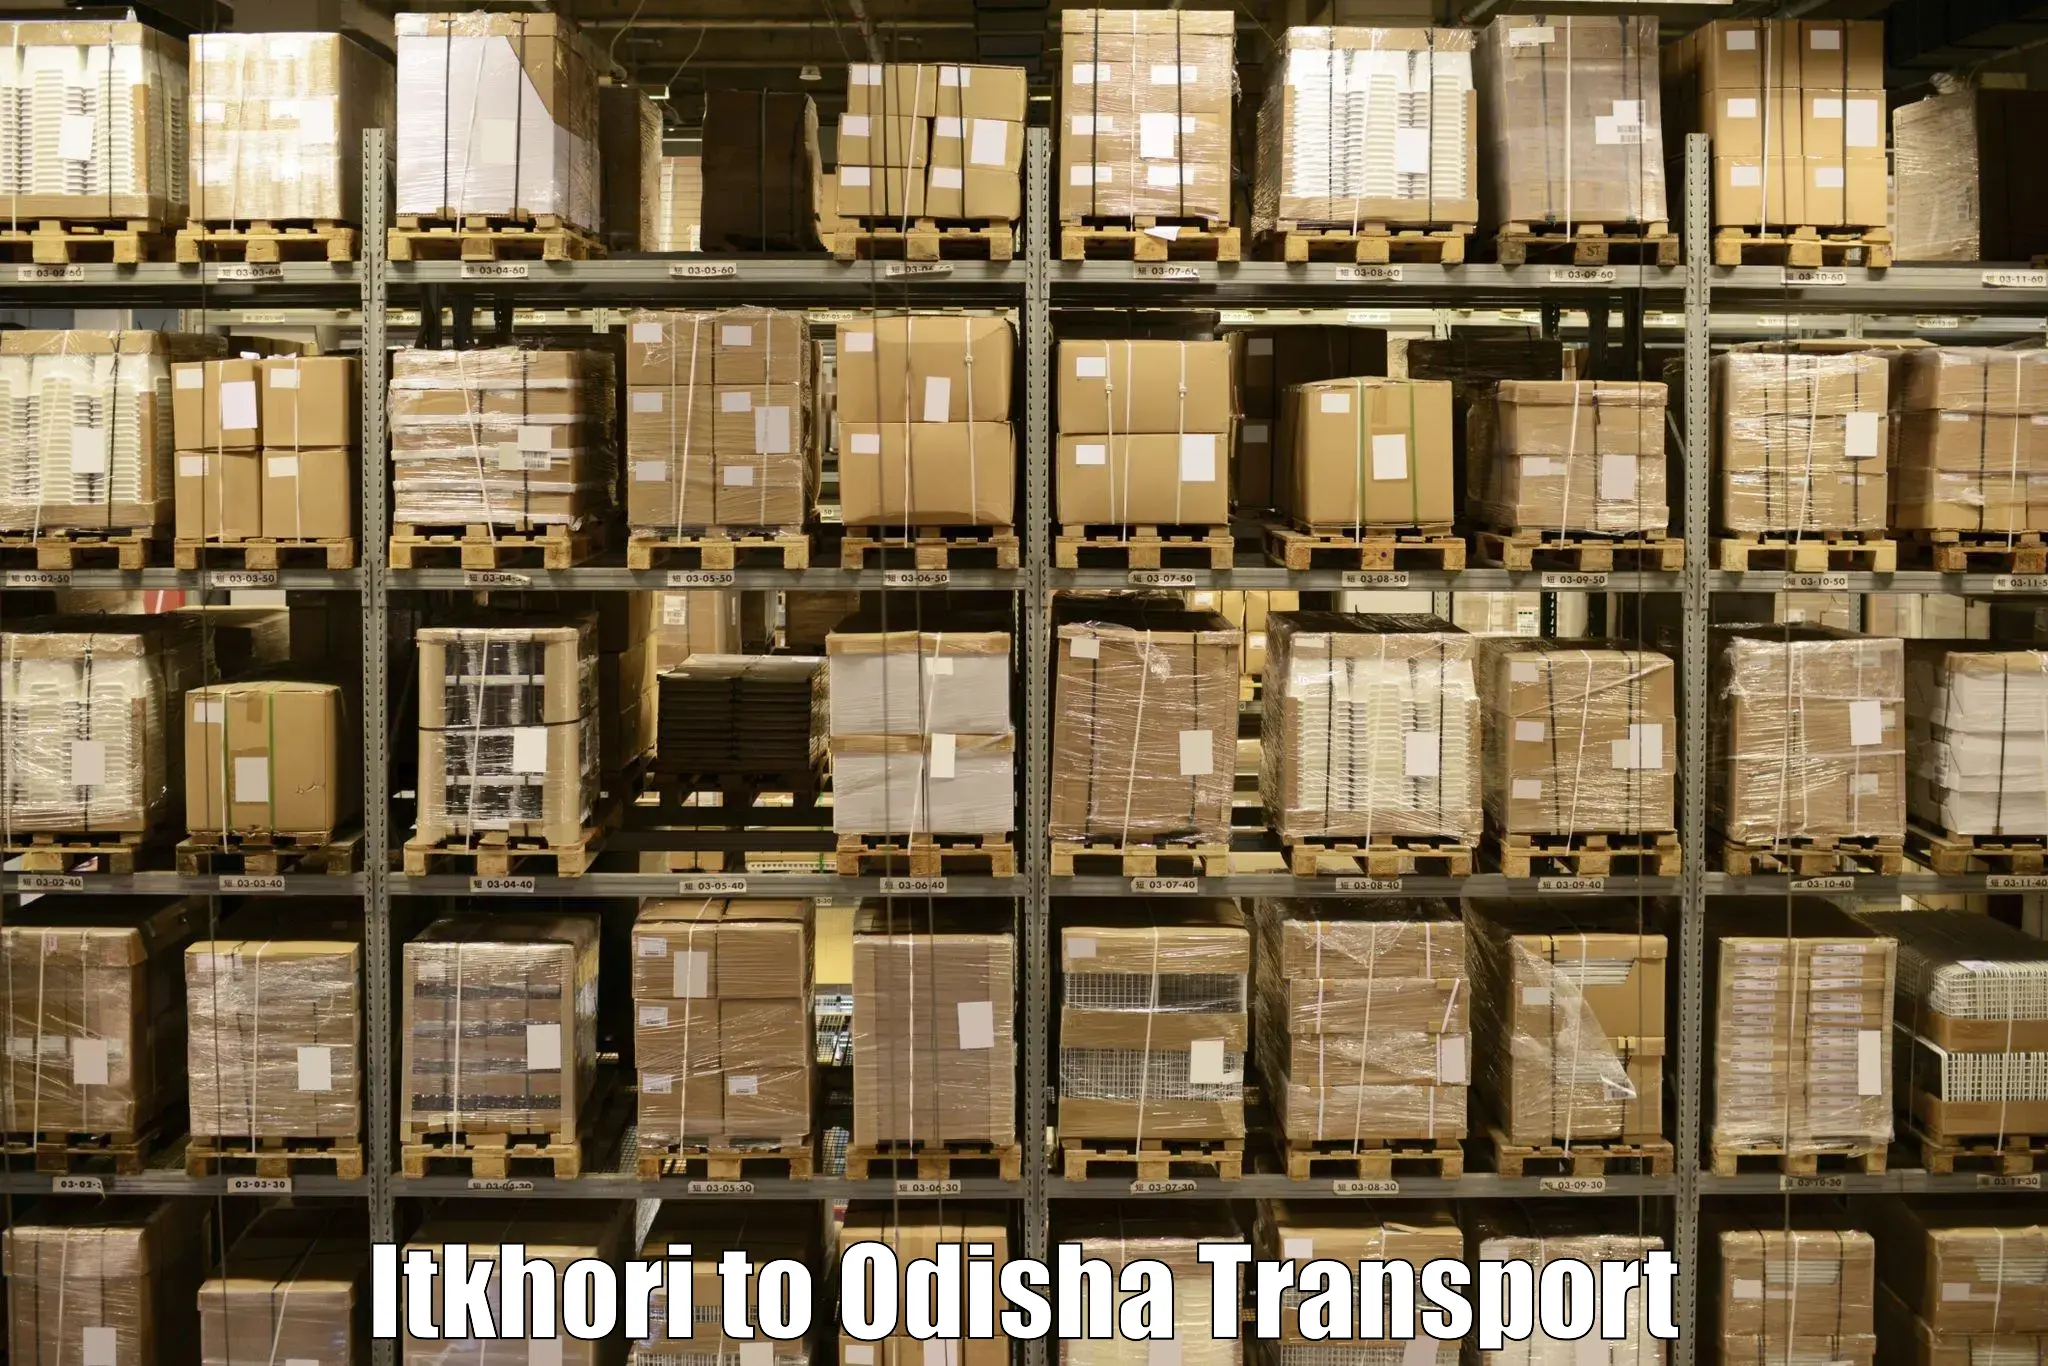 Intercity goods transport in Itkhori to Melchhamunda